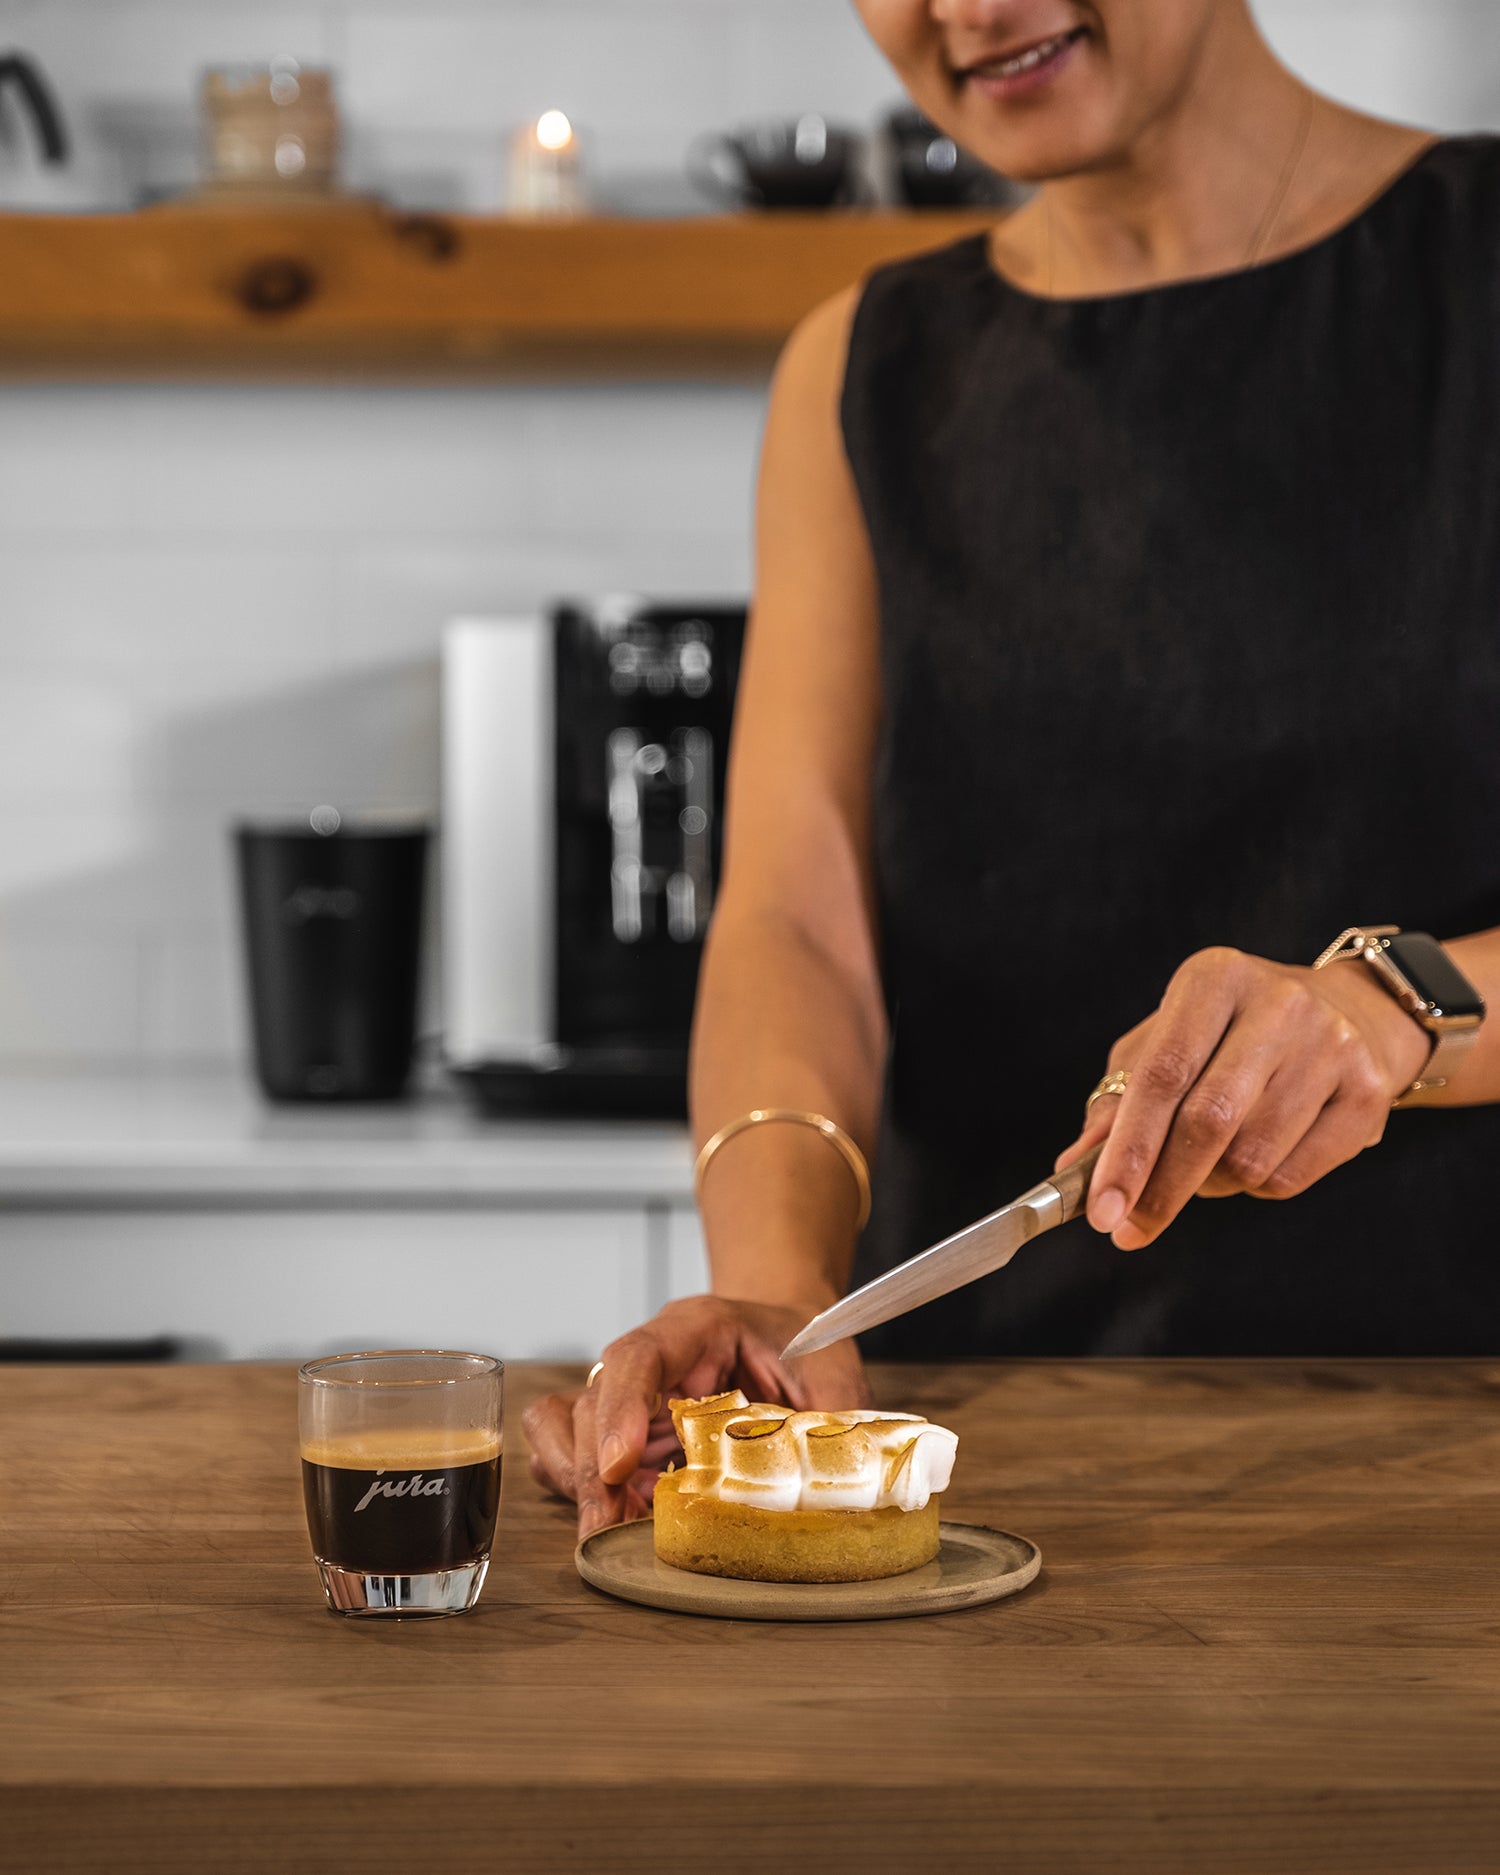 Femme coupant une pâtisserie à côté d'une tasse d'espresso JURA. JURA E6 en arrière - plan